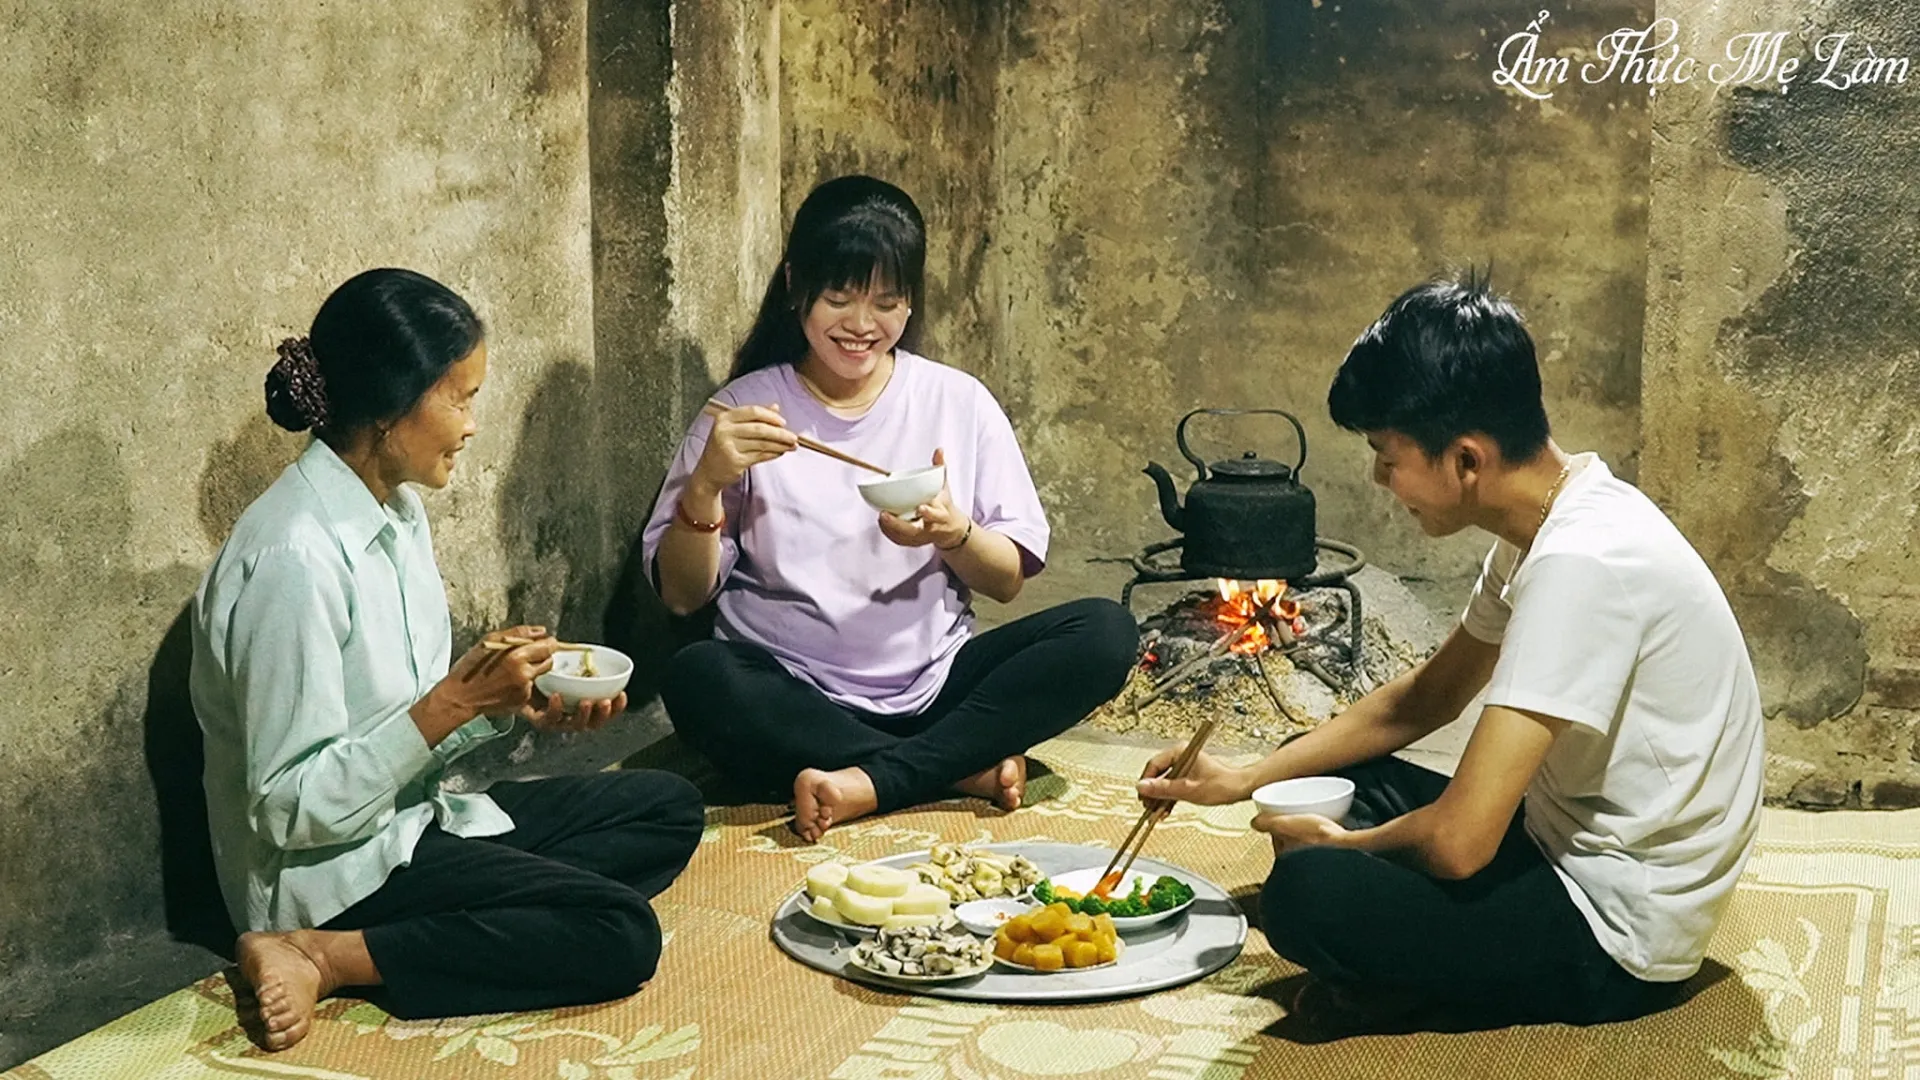 Video: Hành trình 8 năm chủ kênh 'Ẩm thực mẹ làm' xây biệt thự tặng mẹ, CDM nghẹn ngào trước nghị lực